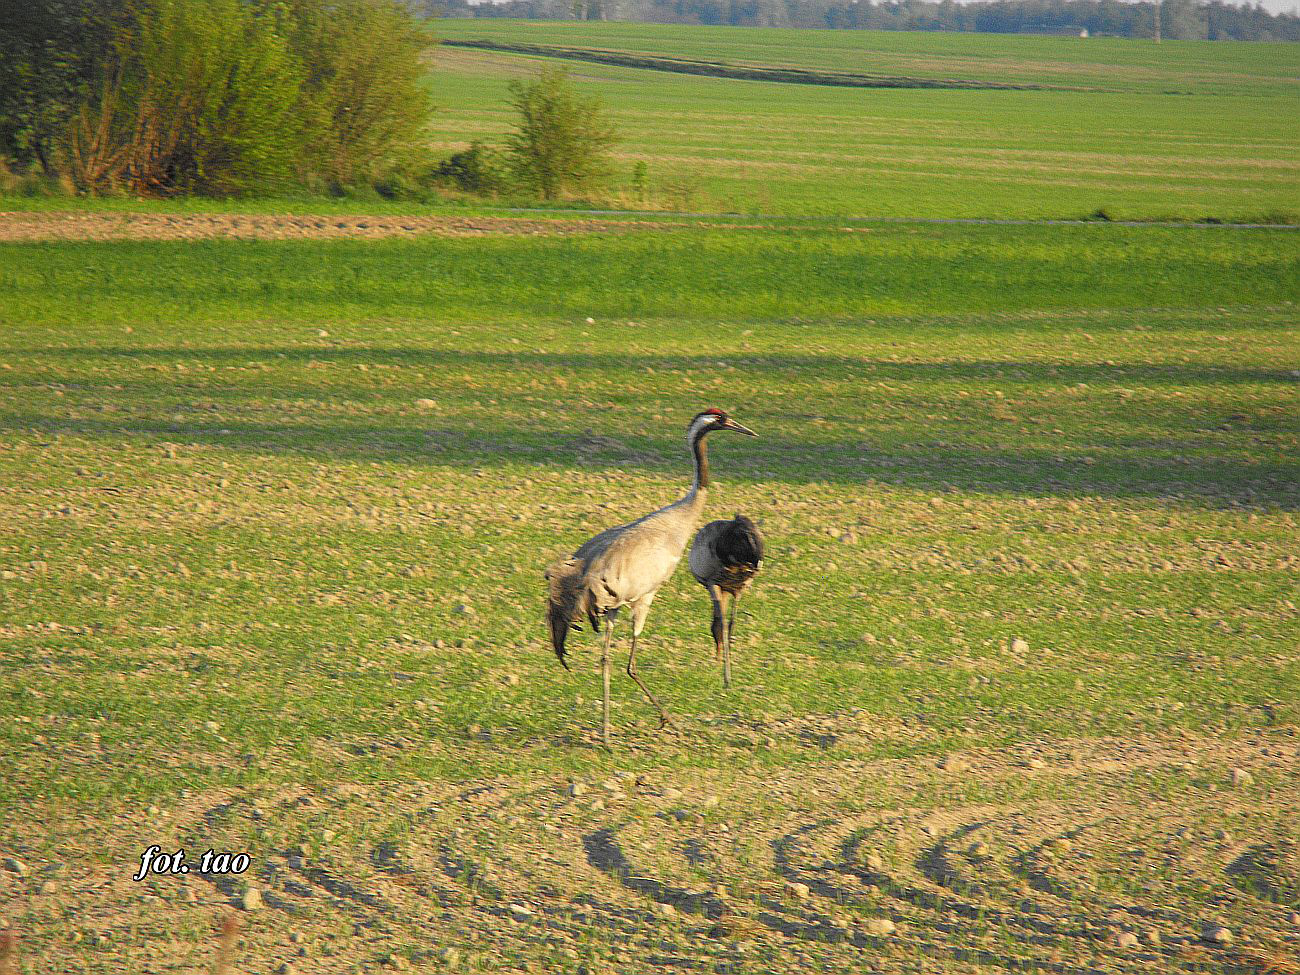 Żerujące żurawie na polu w Żurawieńcu k/Sudrag. Na tych polach w kwietniu można spotkać stada liczące kilkadziesiąt sztuk, ale żurawie są bardzo płochliwe i fotografowanie ich z bliska jest praktycznie niemożliwe, 29.04.2016 r.